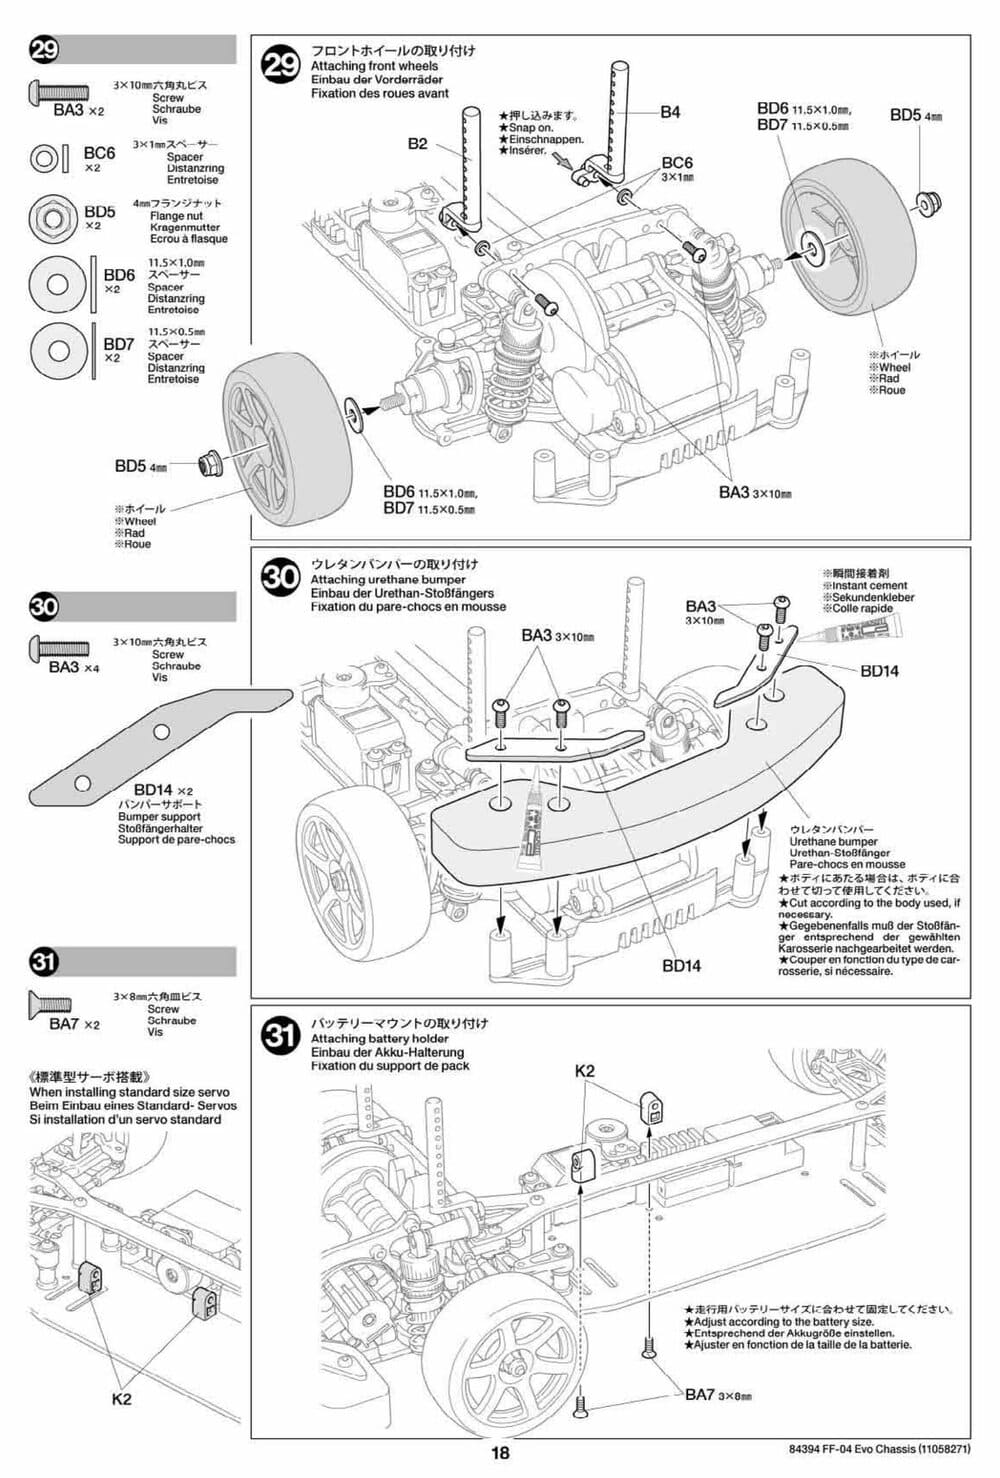 Tamiya - FF-04 Evo Chassis - Manual - Page 18